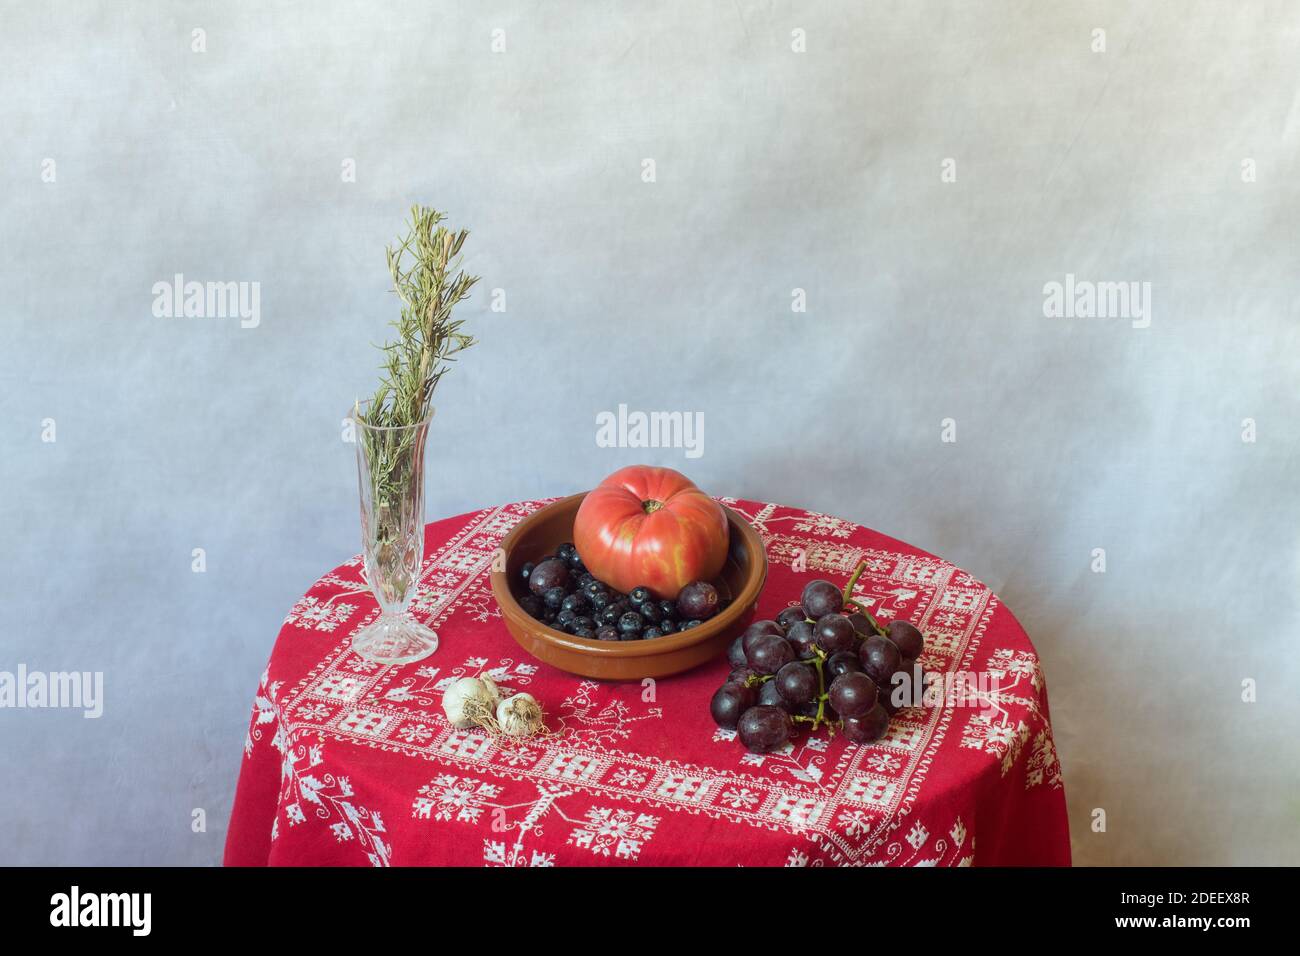 Stillleben einer Steingutschüssel voller Früchte, Gemüse, Nüsse auf einem Tisch mit einer roten Tischdecke mit Weihnachtsschmuck und Rosmarin bedeckt. Stockfoto